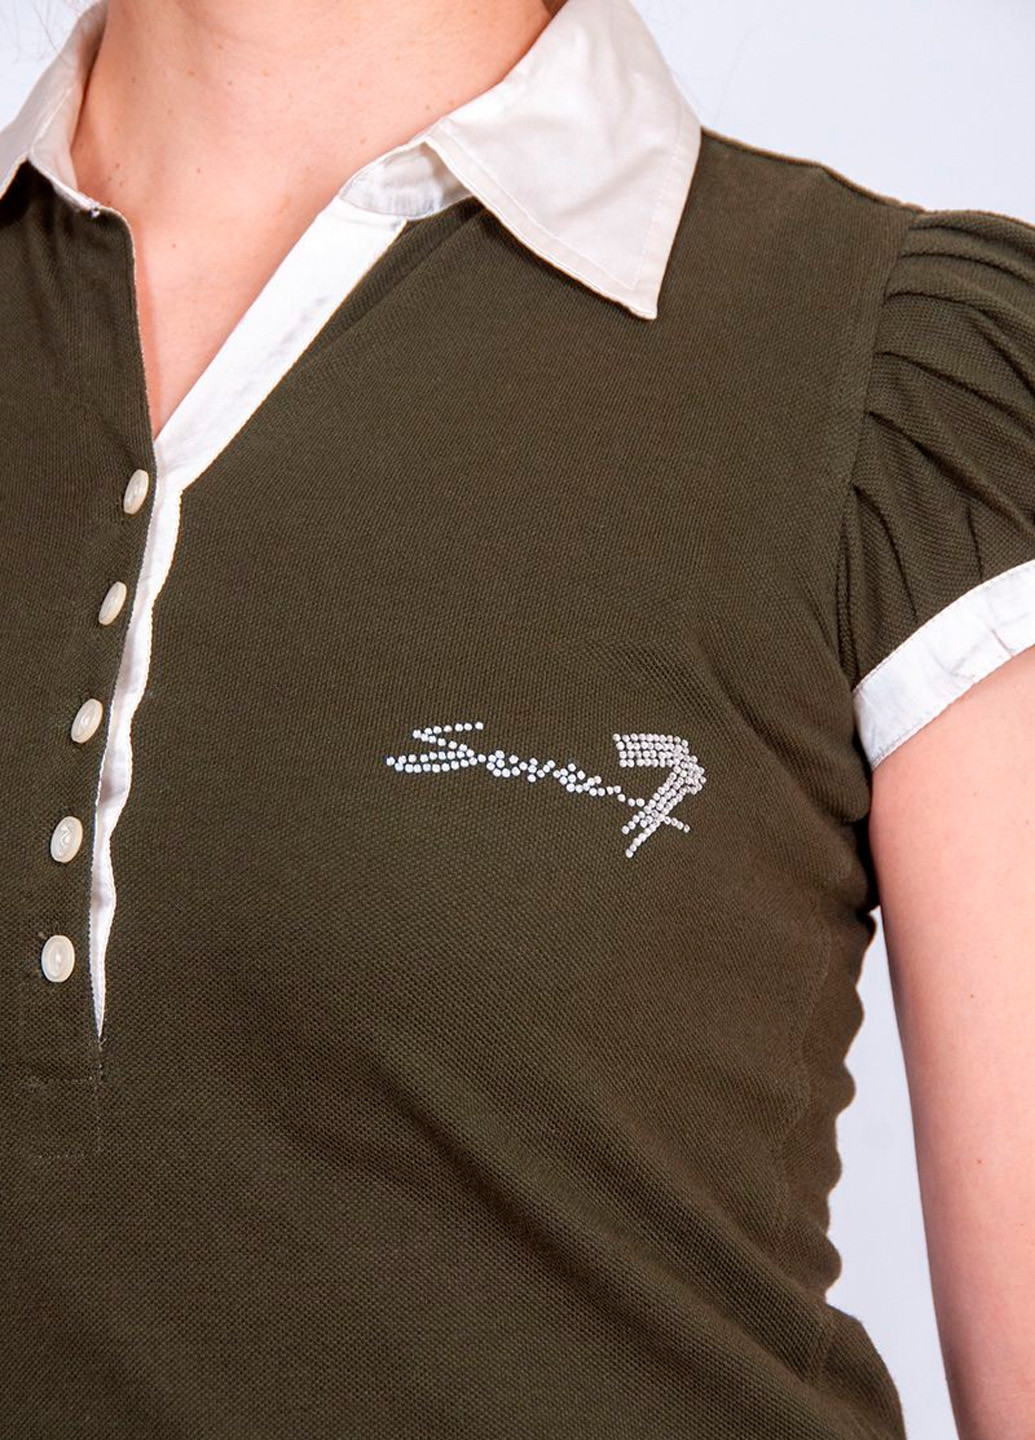 Оливковая женская футболка-поло Seven 7